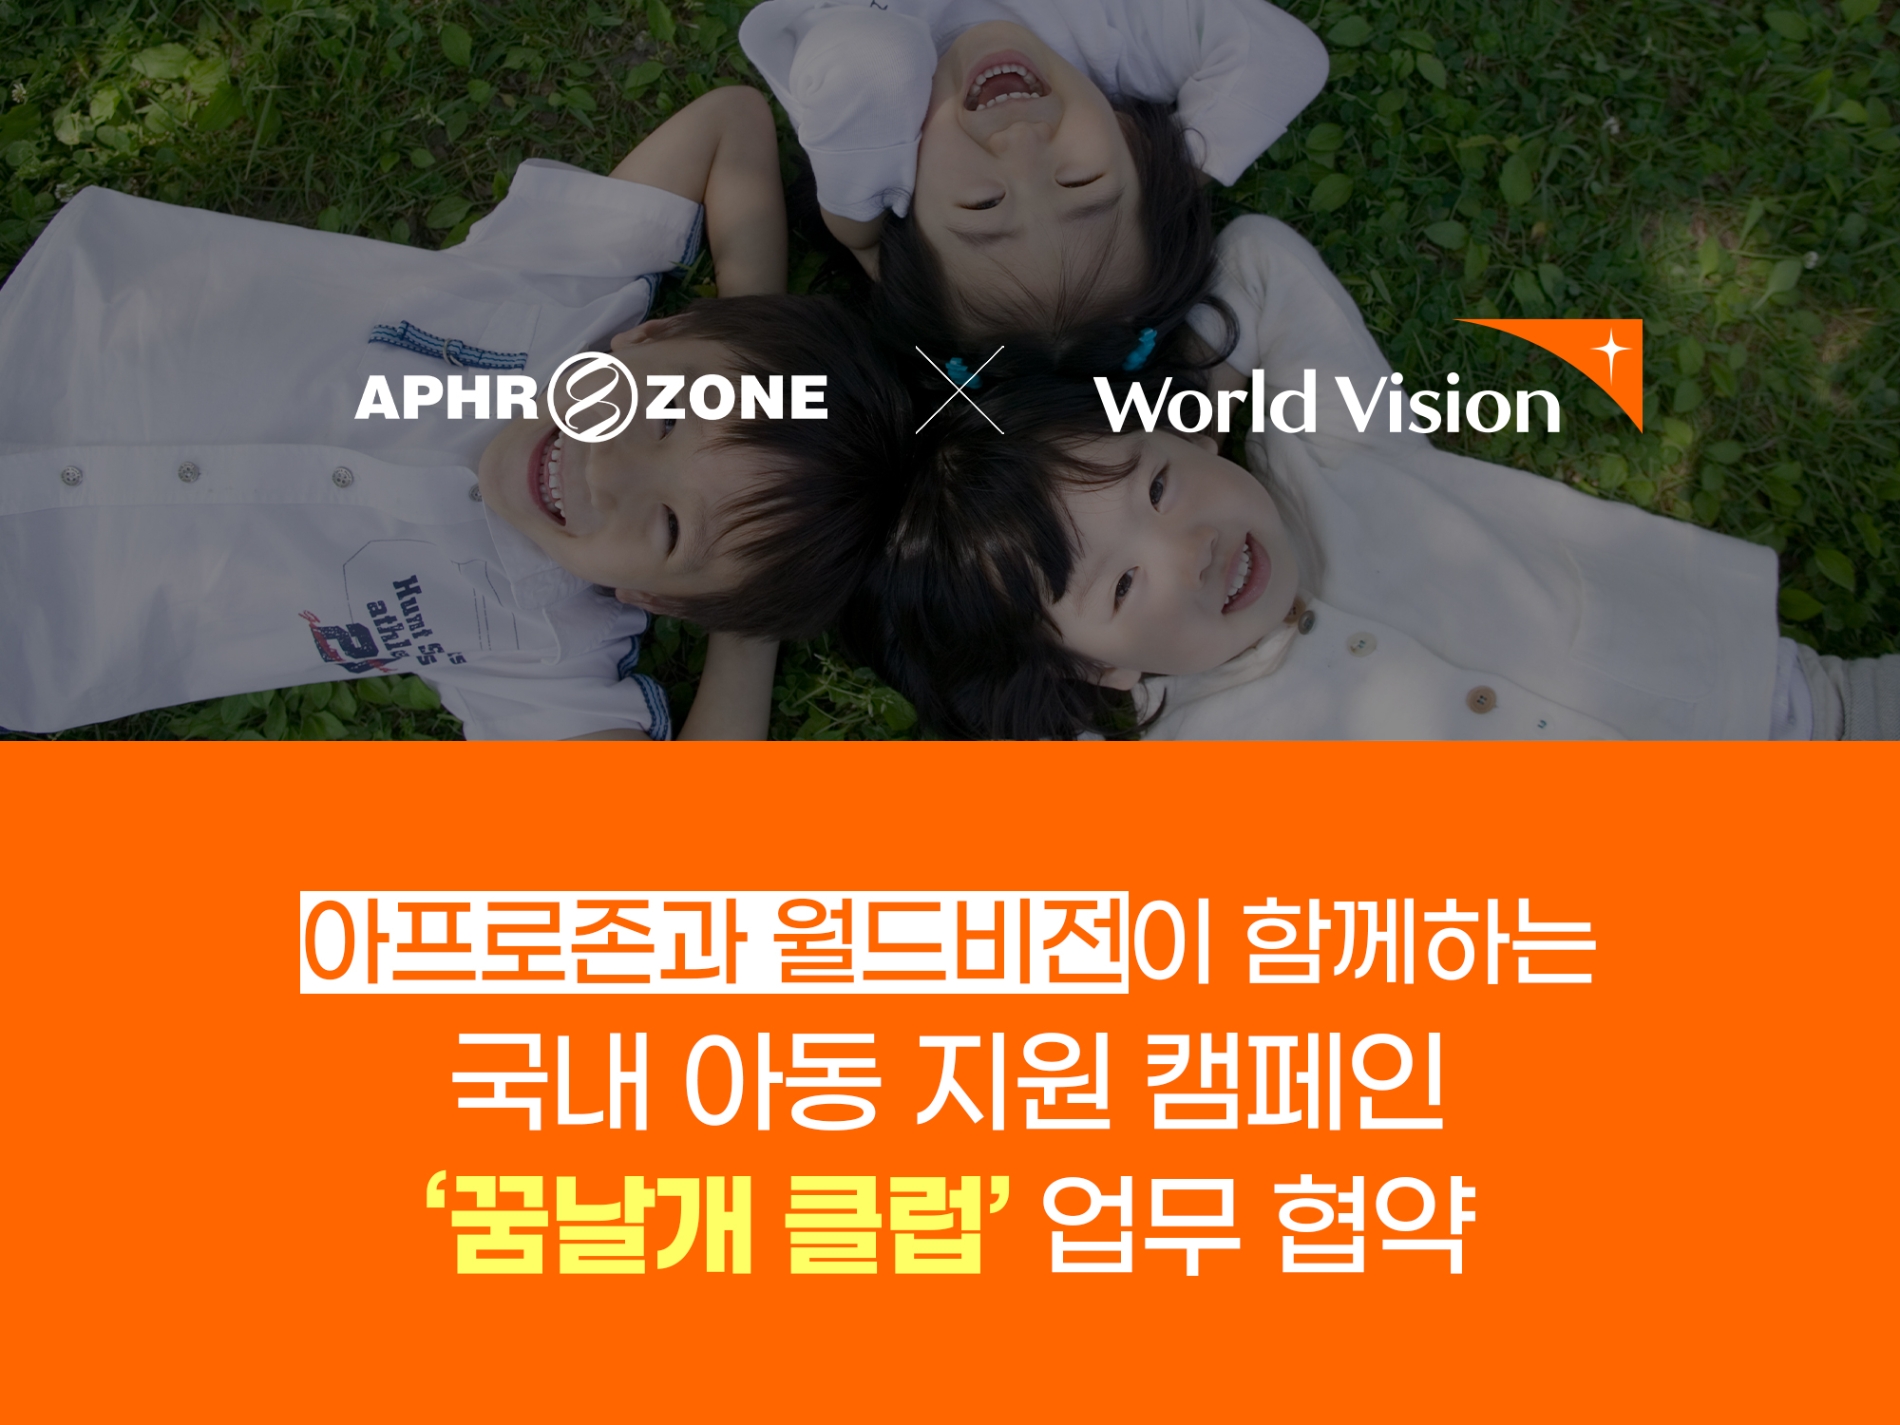 [기업사회활동] 아프로존, 9년 연속 월드비전 ‘꿈날개클럽’ 후원 약속